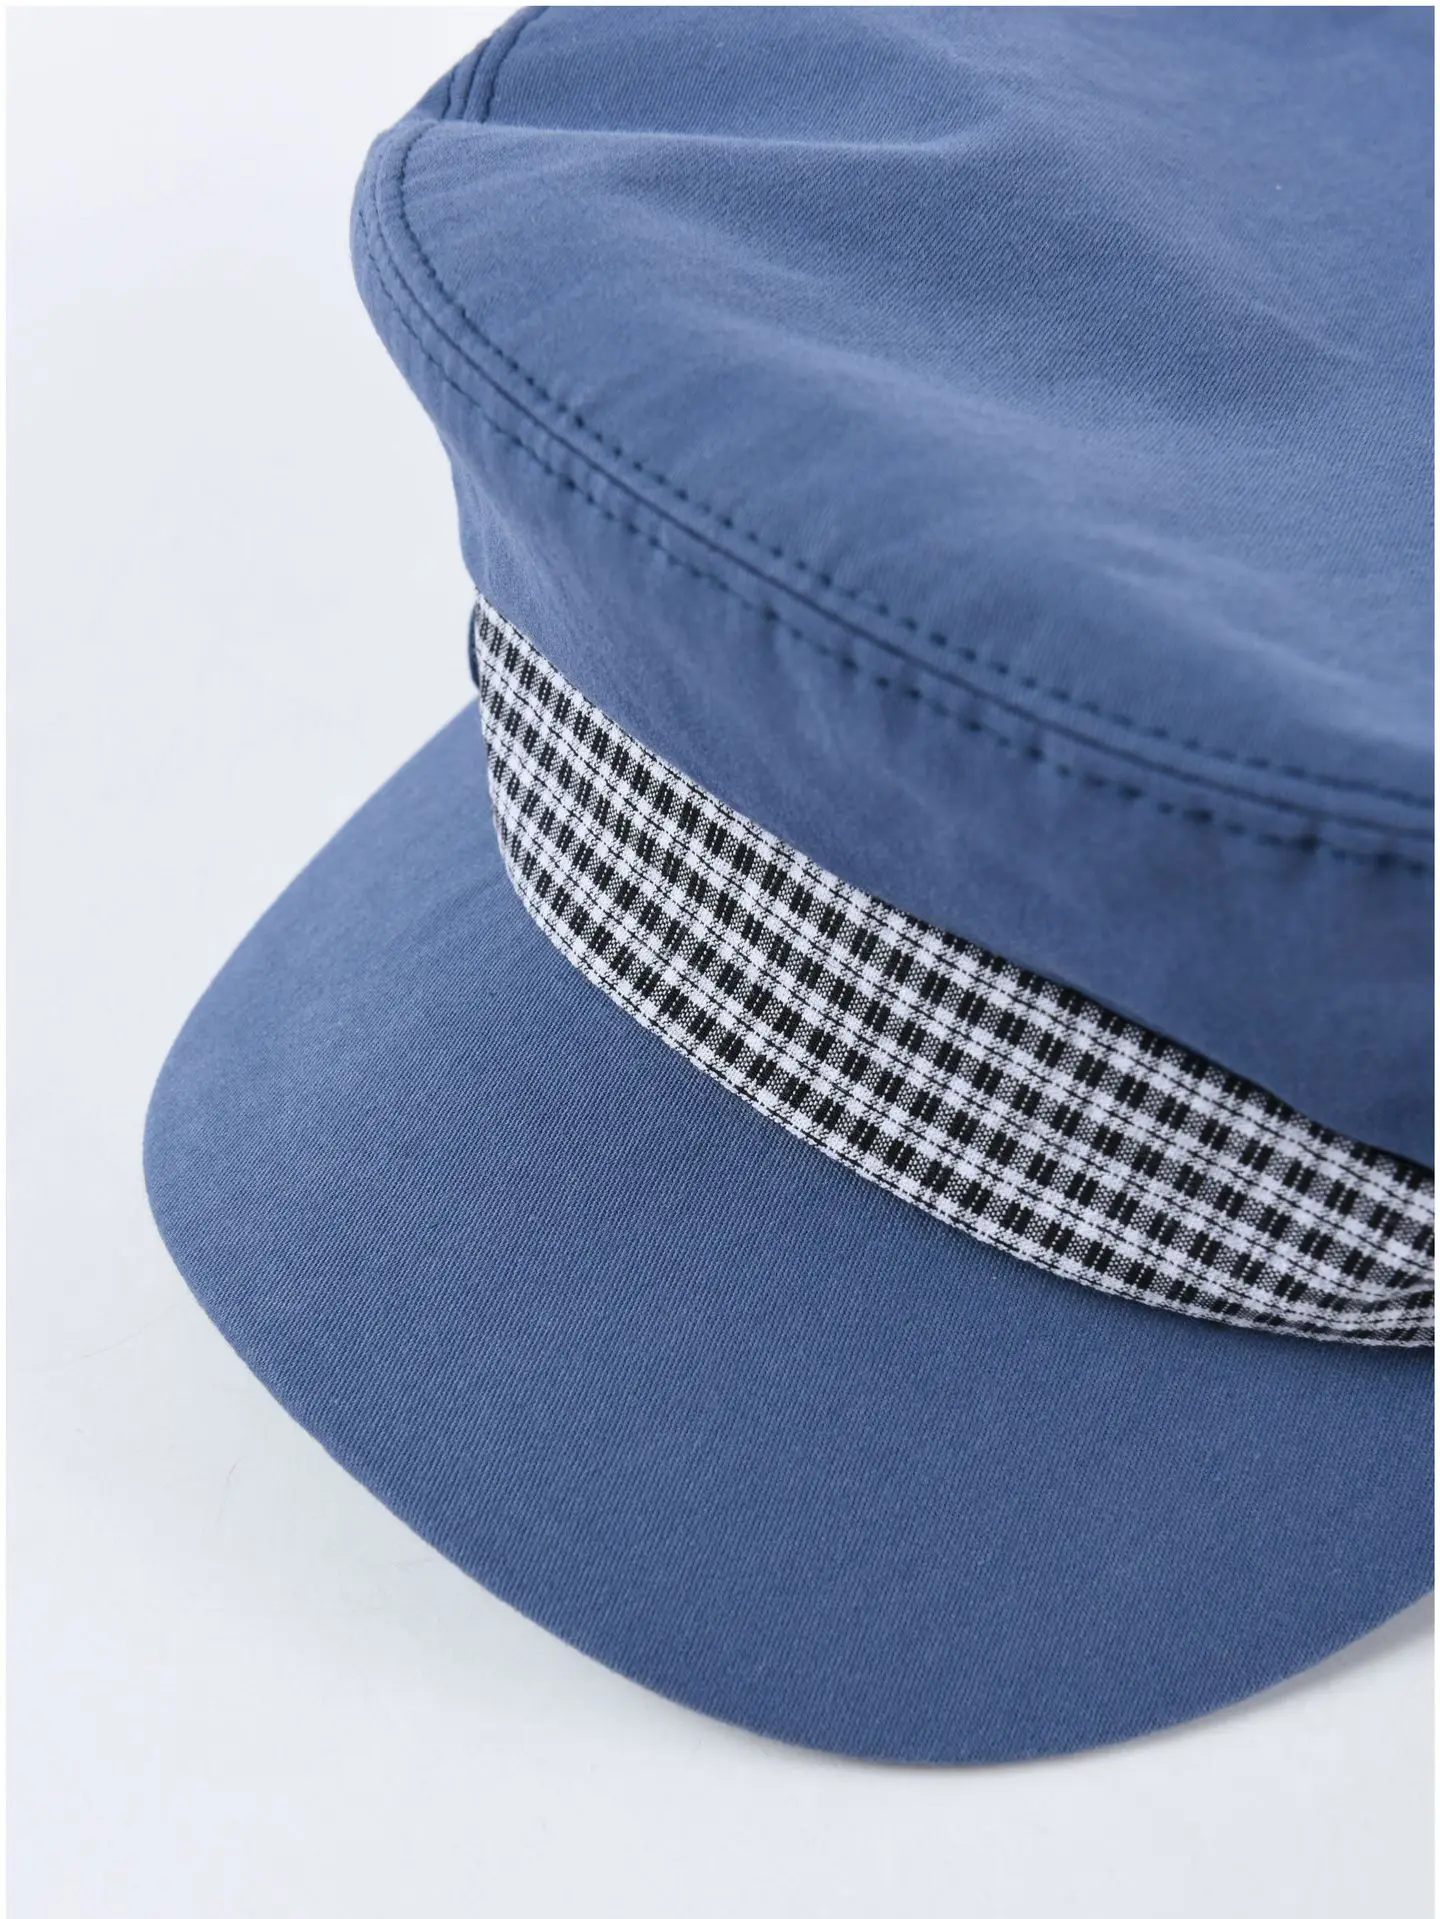 USPOP,, Осенние новые кепки Newsboy для женщин, клетчатые, с бантом, в стиле пэчворк, с плоским верхом, военные шапки,, хлопковая кепка с козырьком